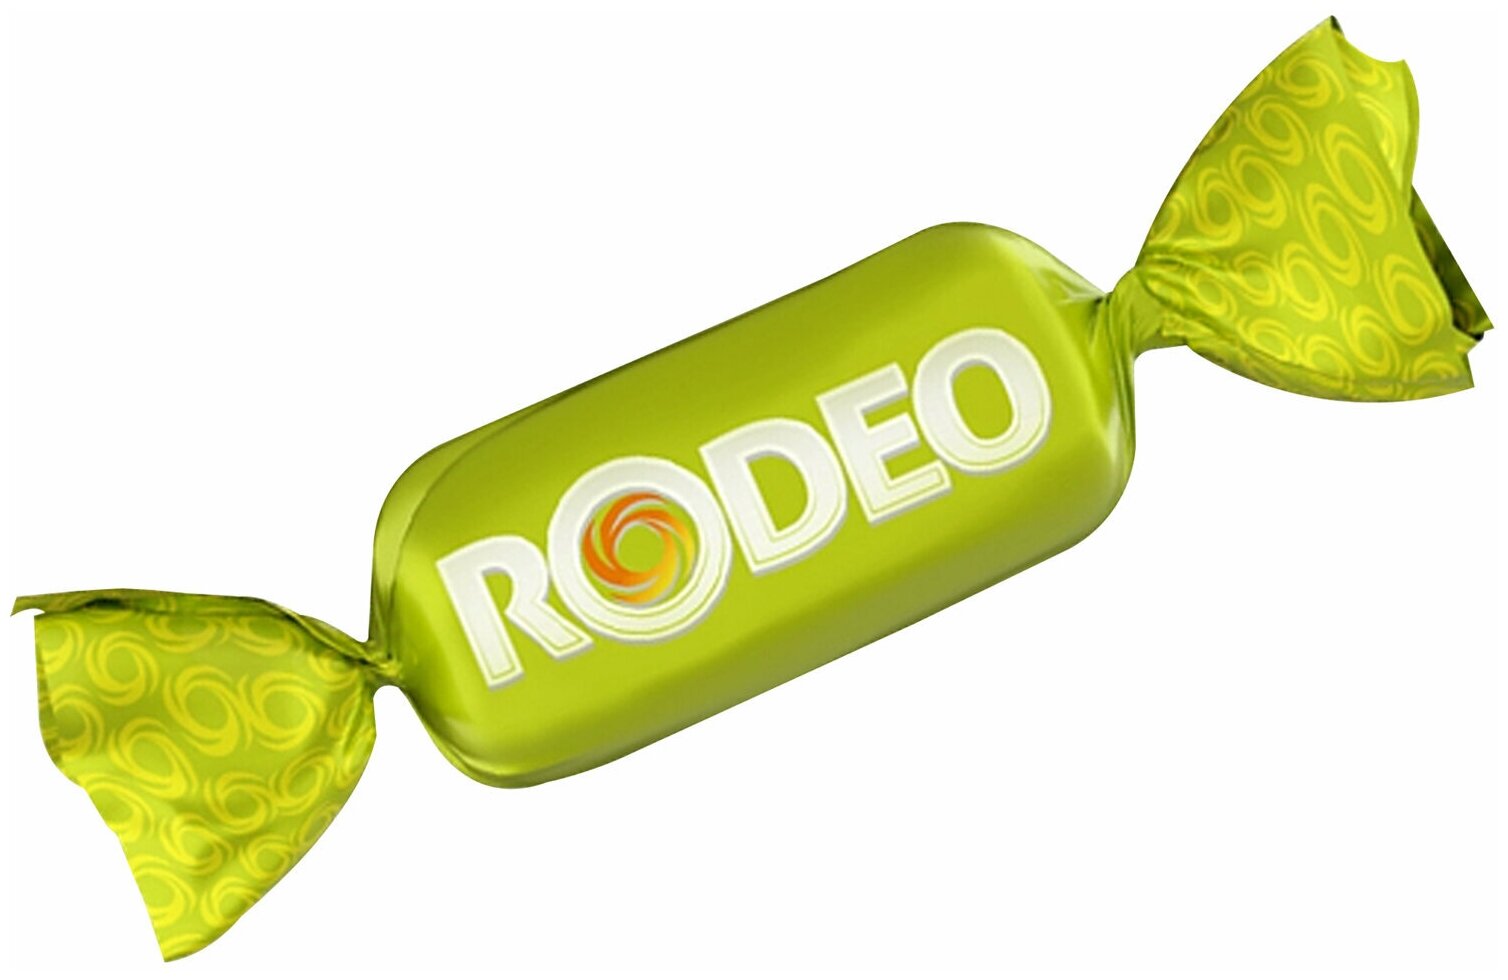 Конфеты шоколадные RODEO SOFT с мягкой карамелью и нугой, 500 г, пакет, НК839 - 1 шт.